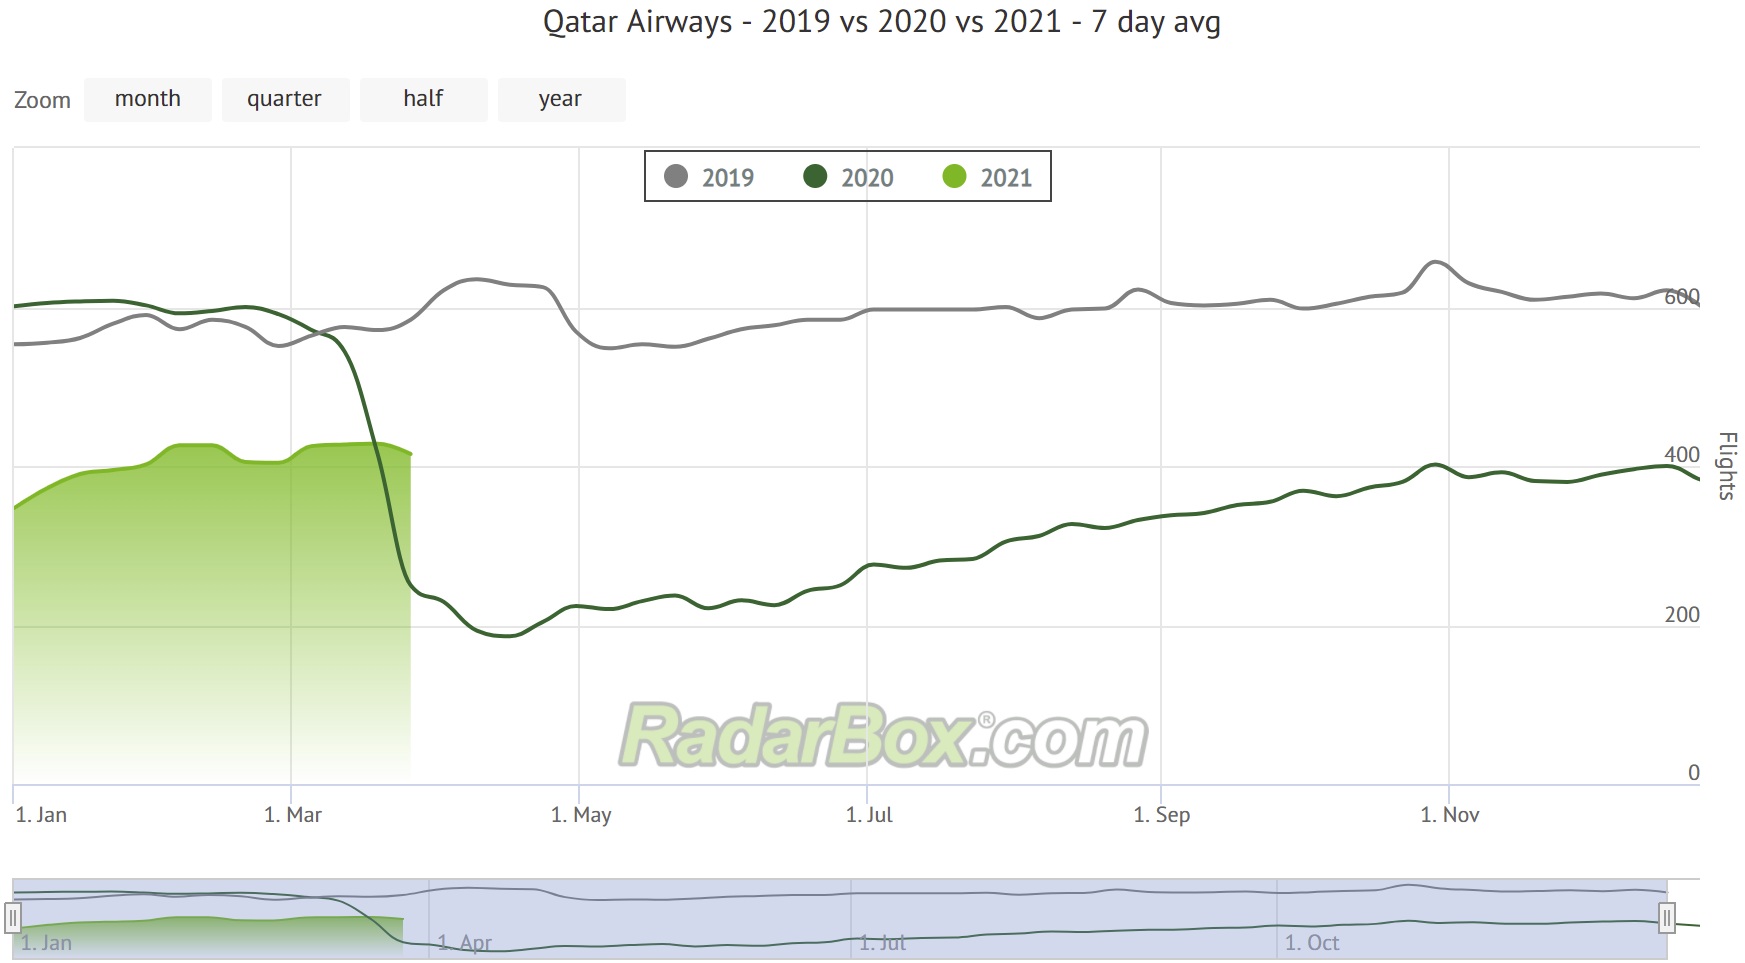 Qatar Airways radarbox traffic graph